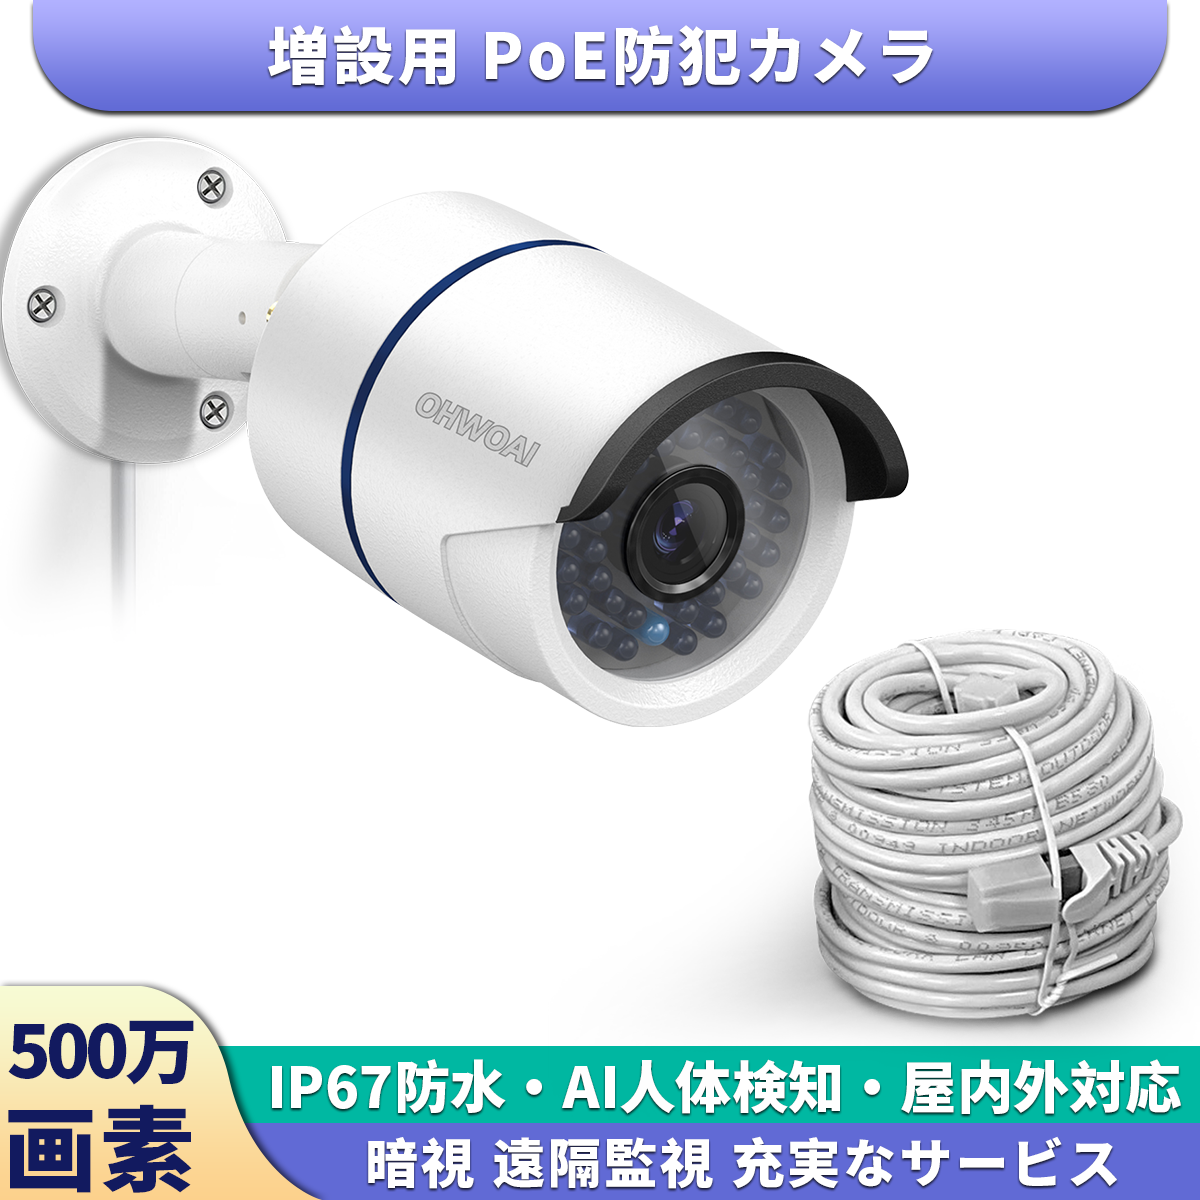 増設用カメラ3k 500万画素 POE防犯カメラ  監視カメラ 屋内屋外対応 poe給電 有線接続 遠隔監視 音声録画 IP67防水防塵